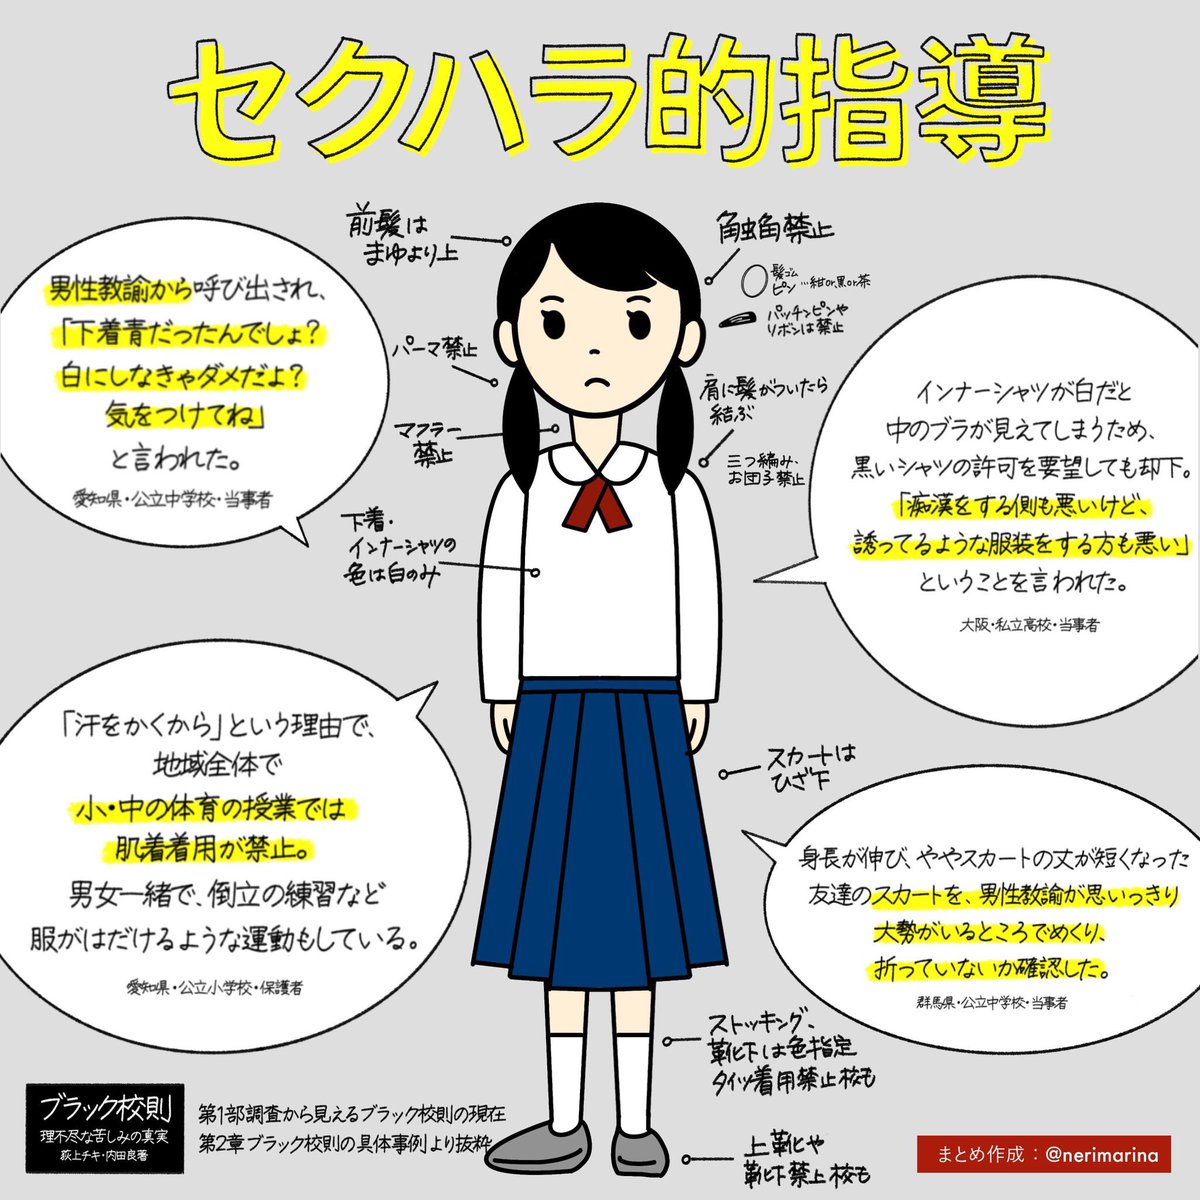 静岡 浜松 女子に 下着は白 ポニーテール禁止 市立中の校則に人権侵害と批判 2 ボニー速報